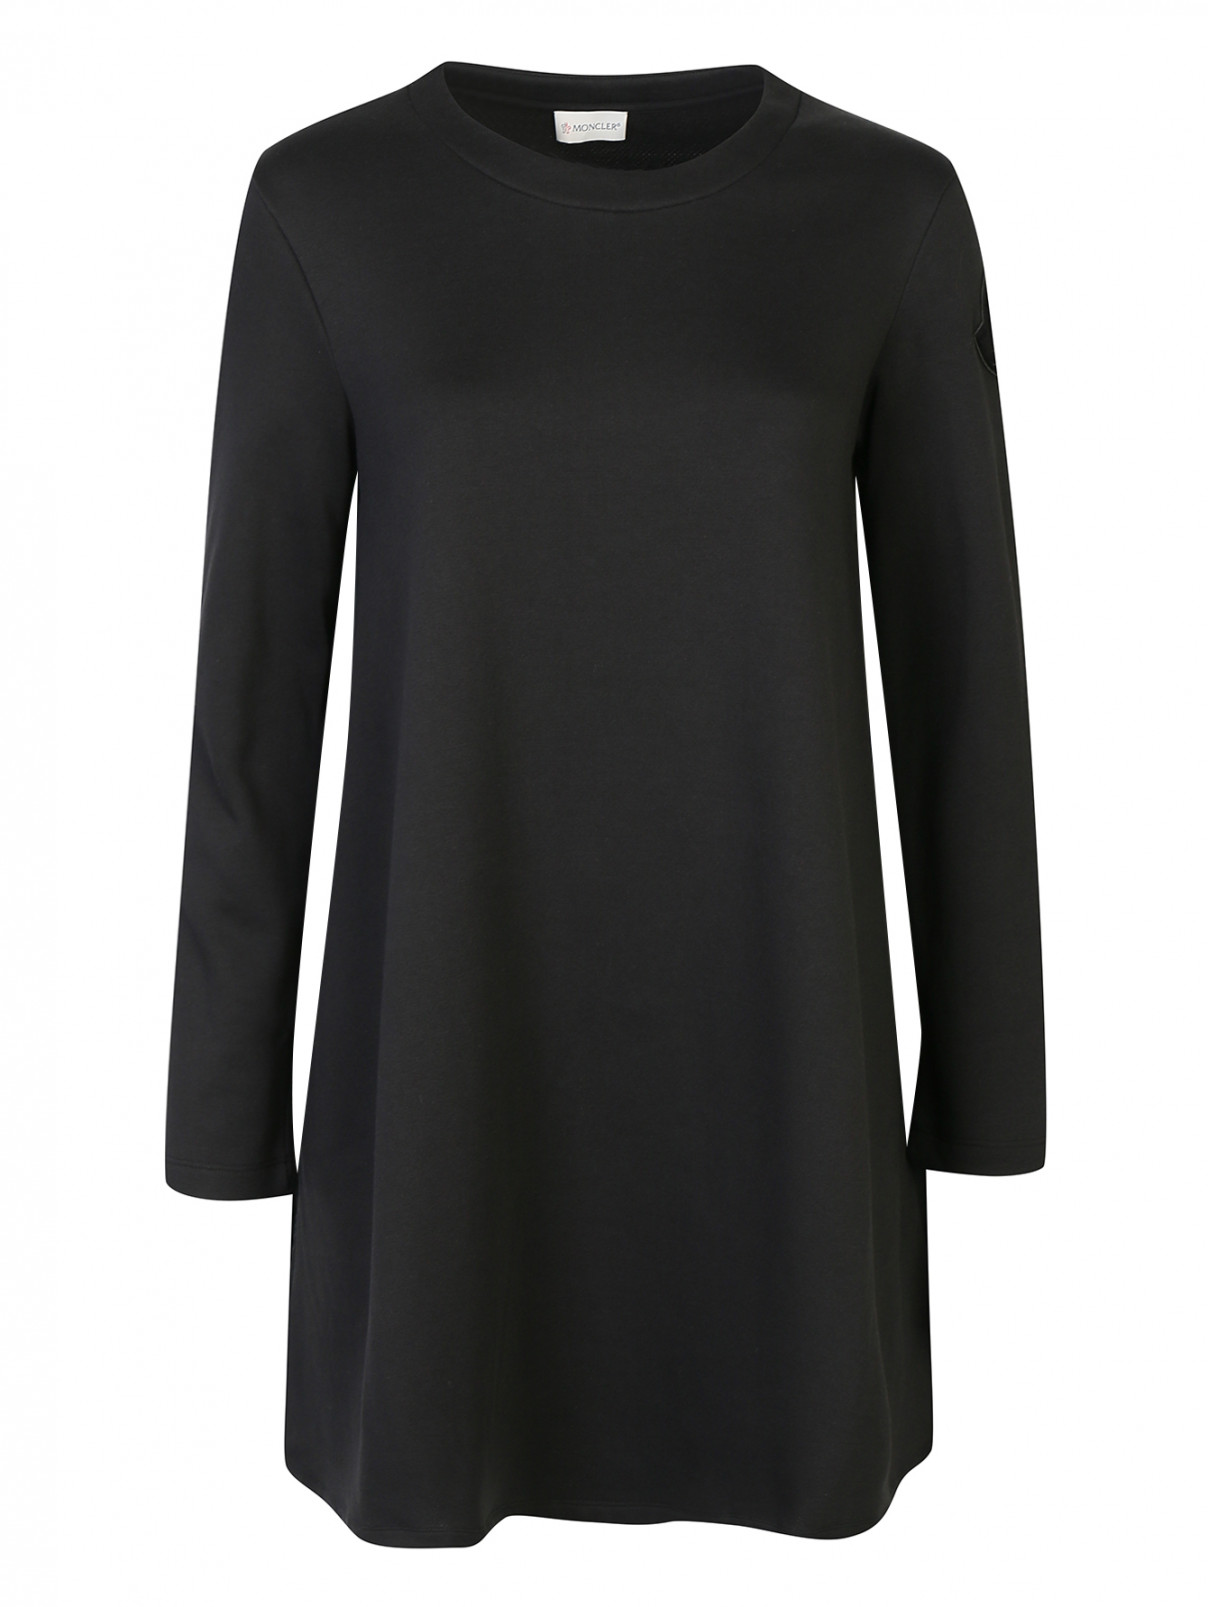 Платье трикотажное со сборкой сзади Moncler  –  Общий вид  – Цвет:  Черный